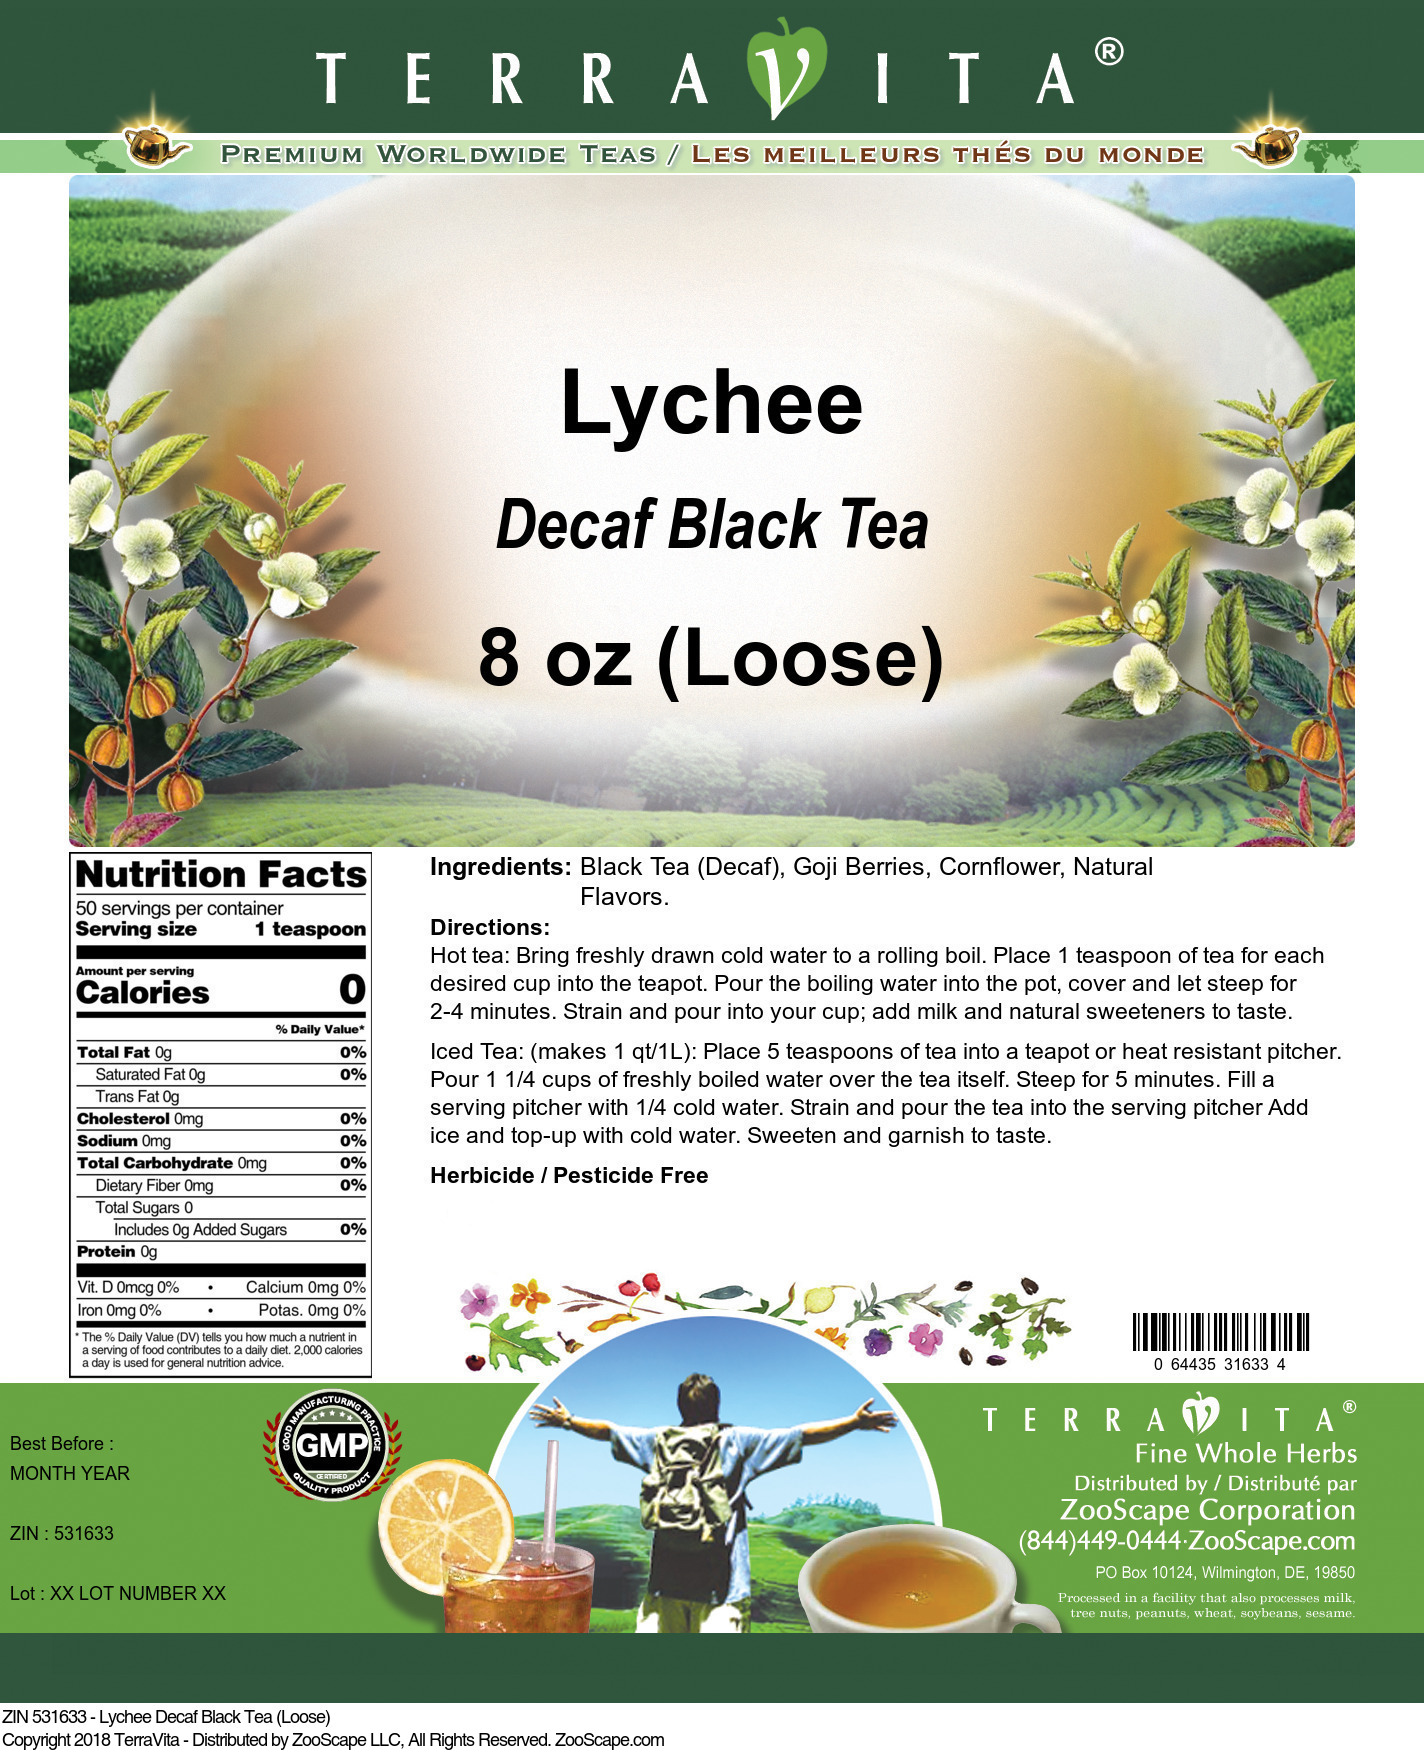 Lychee Decaf Black Tea (Loose) - Label